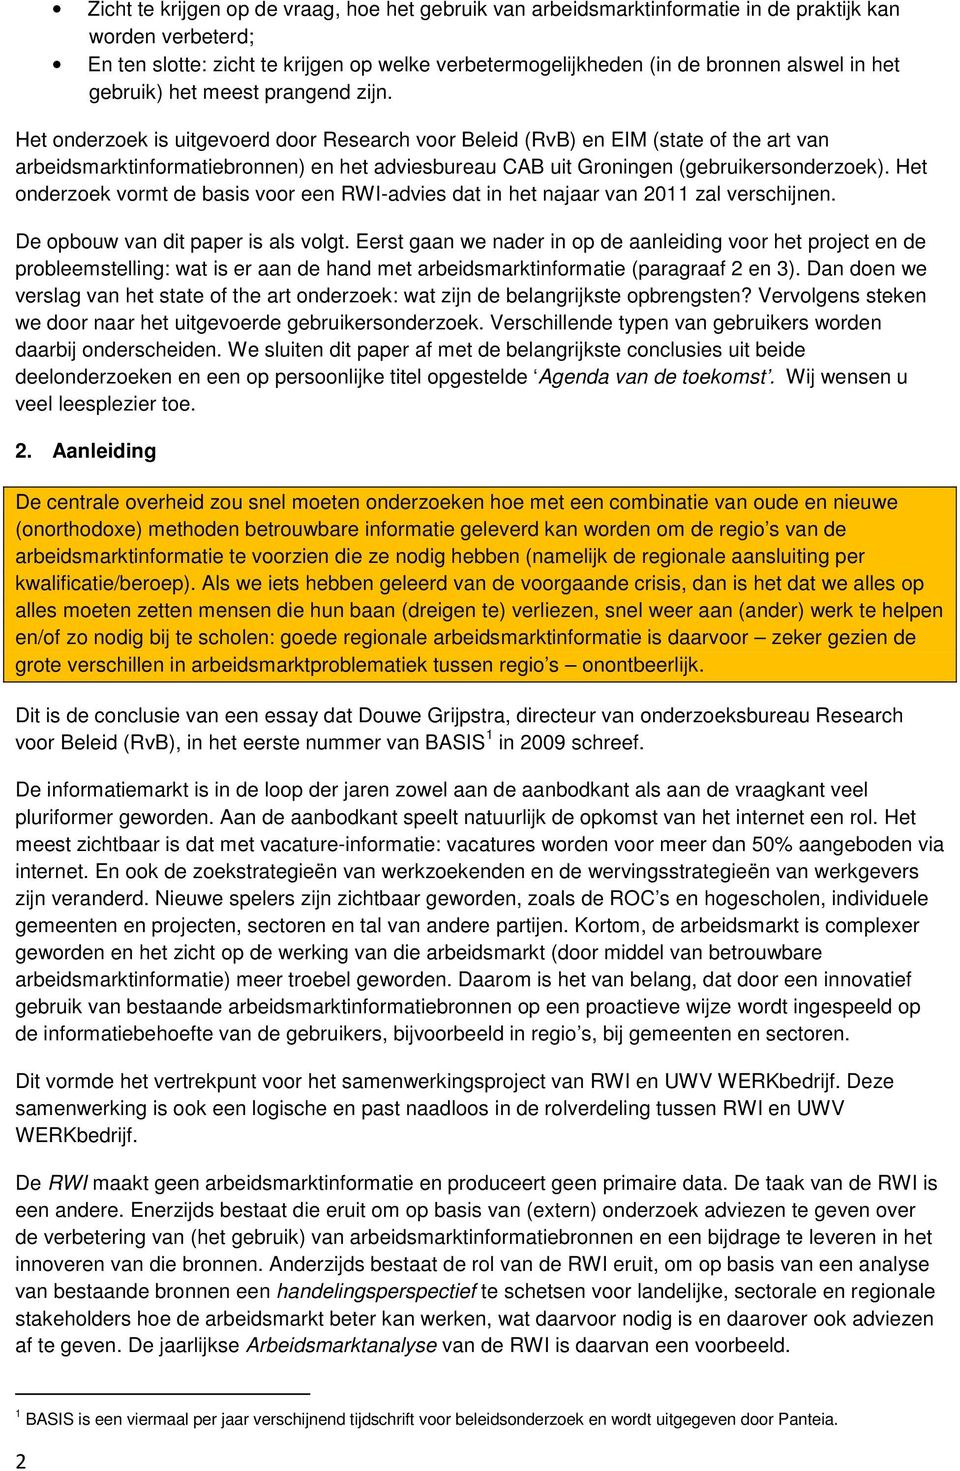 Het onderzoek is uitgevoerd door Research voor Beleid (RvB) en EIM (state of the art van arbeidsmarktinformatiebronnen) en het adviesbureau CAB uit Groningen (gebruikersonderzoek).